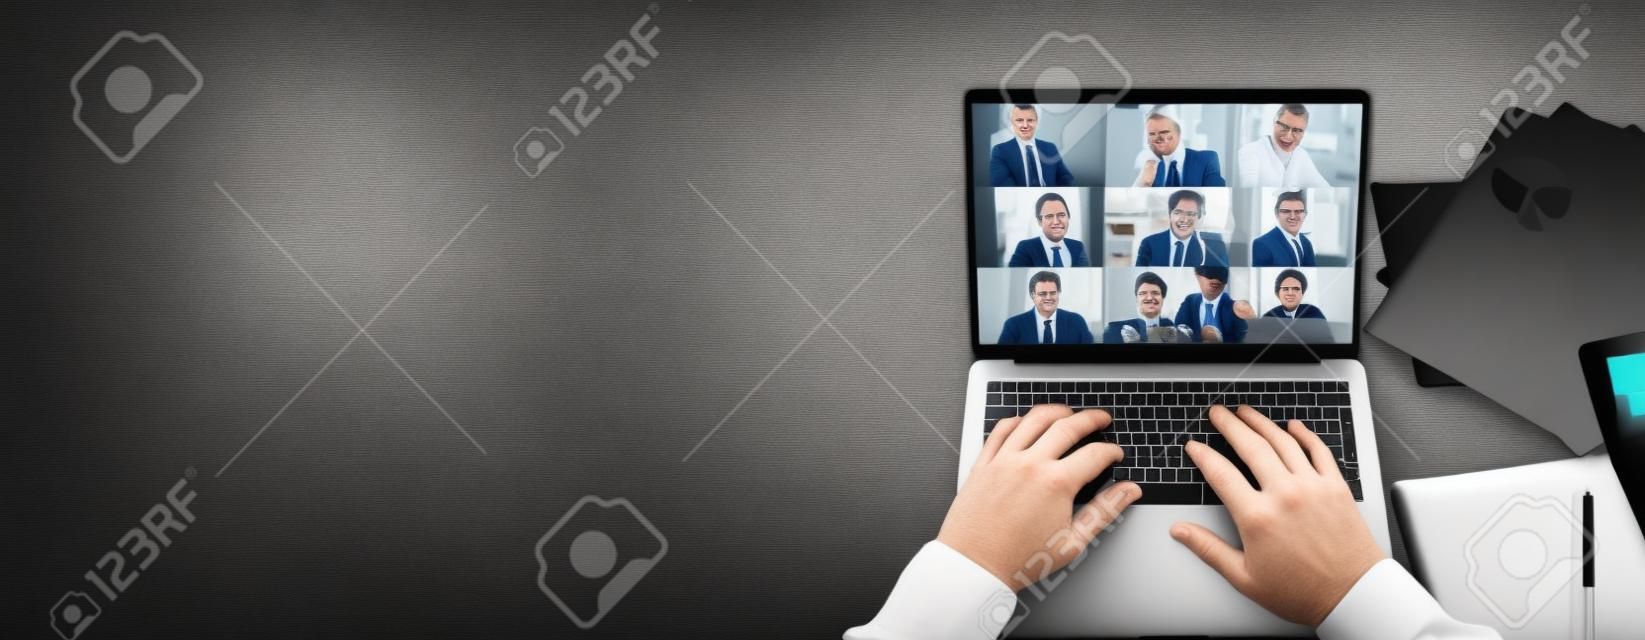 Vista superior da tela do laptop com participantes da videoconferência e mãos maduras do homem no teclado, laptop está em um desktop preto.